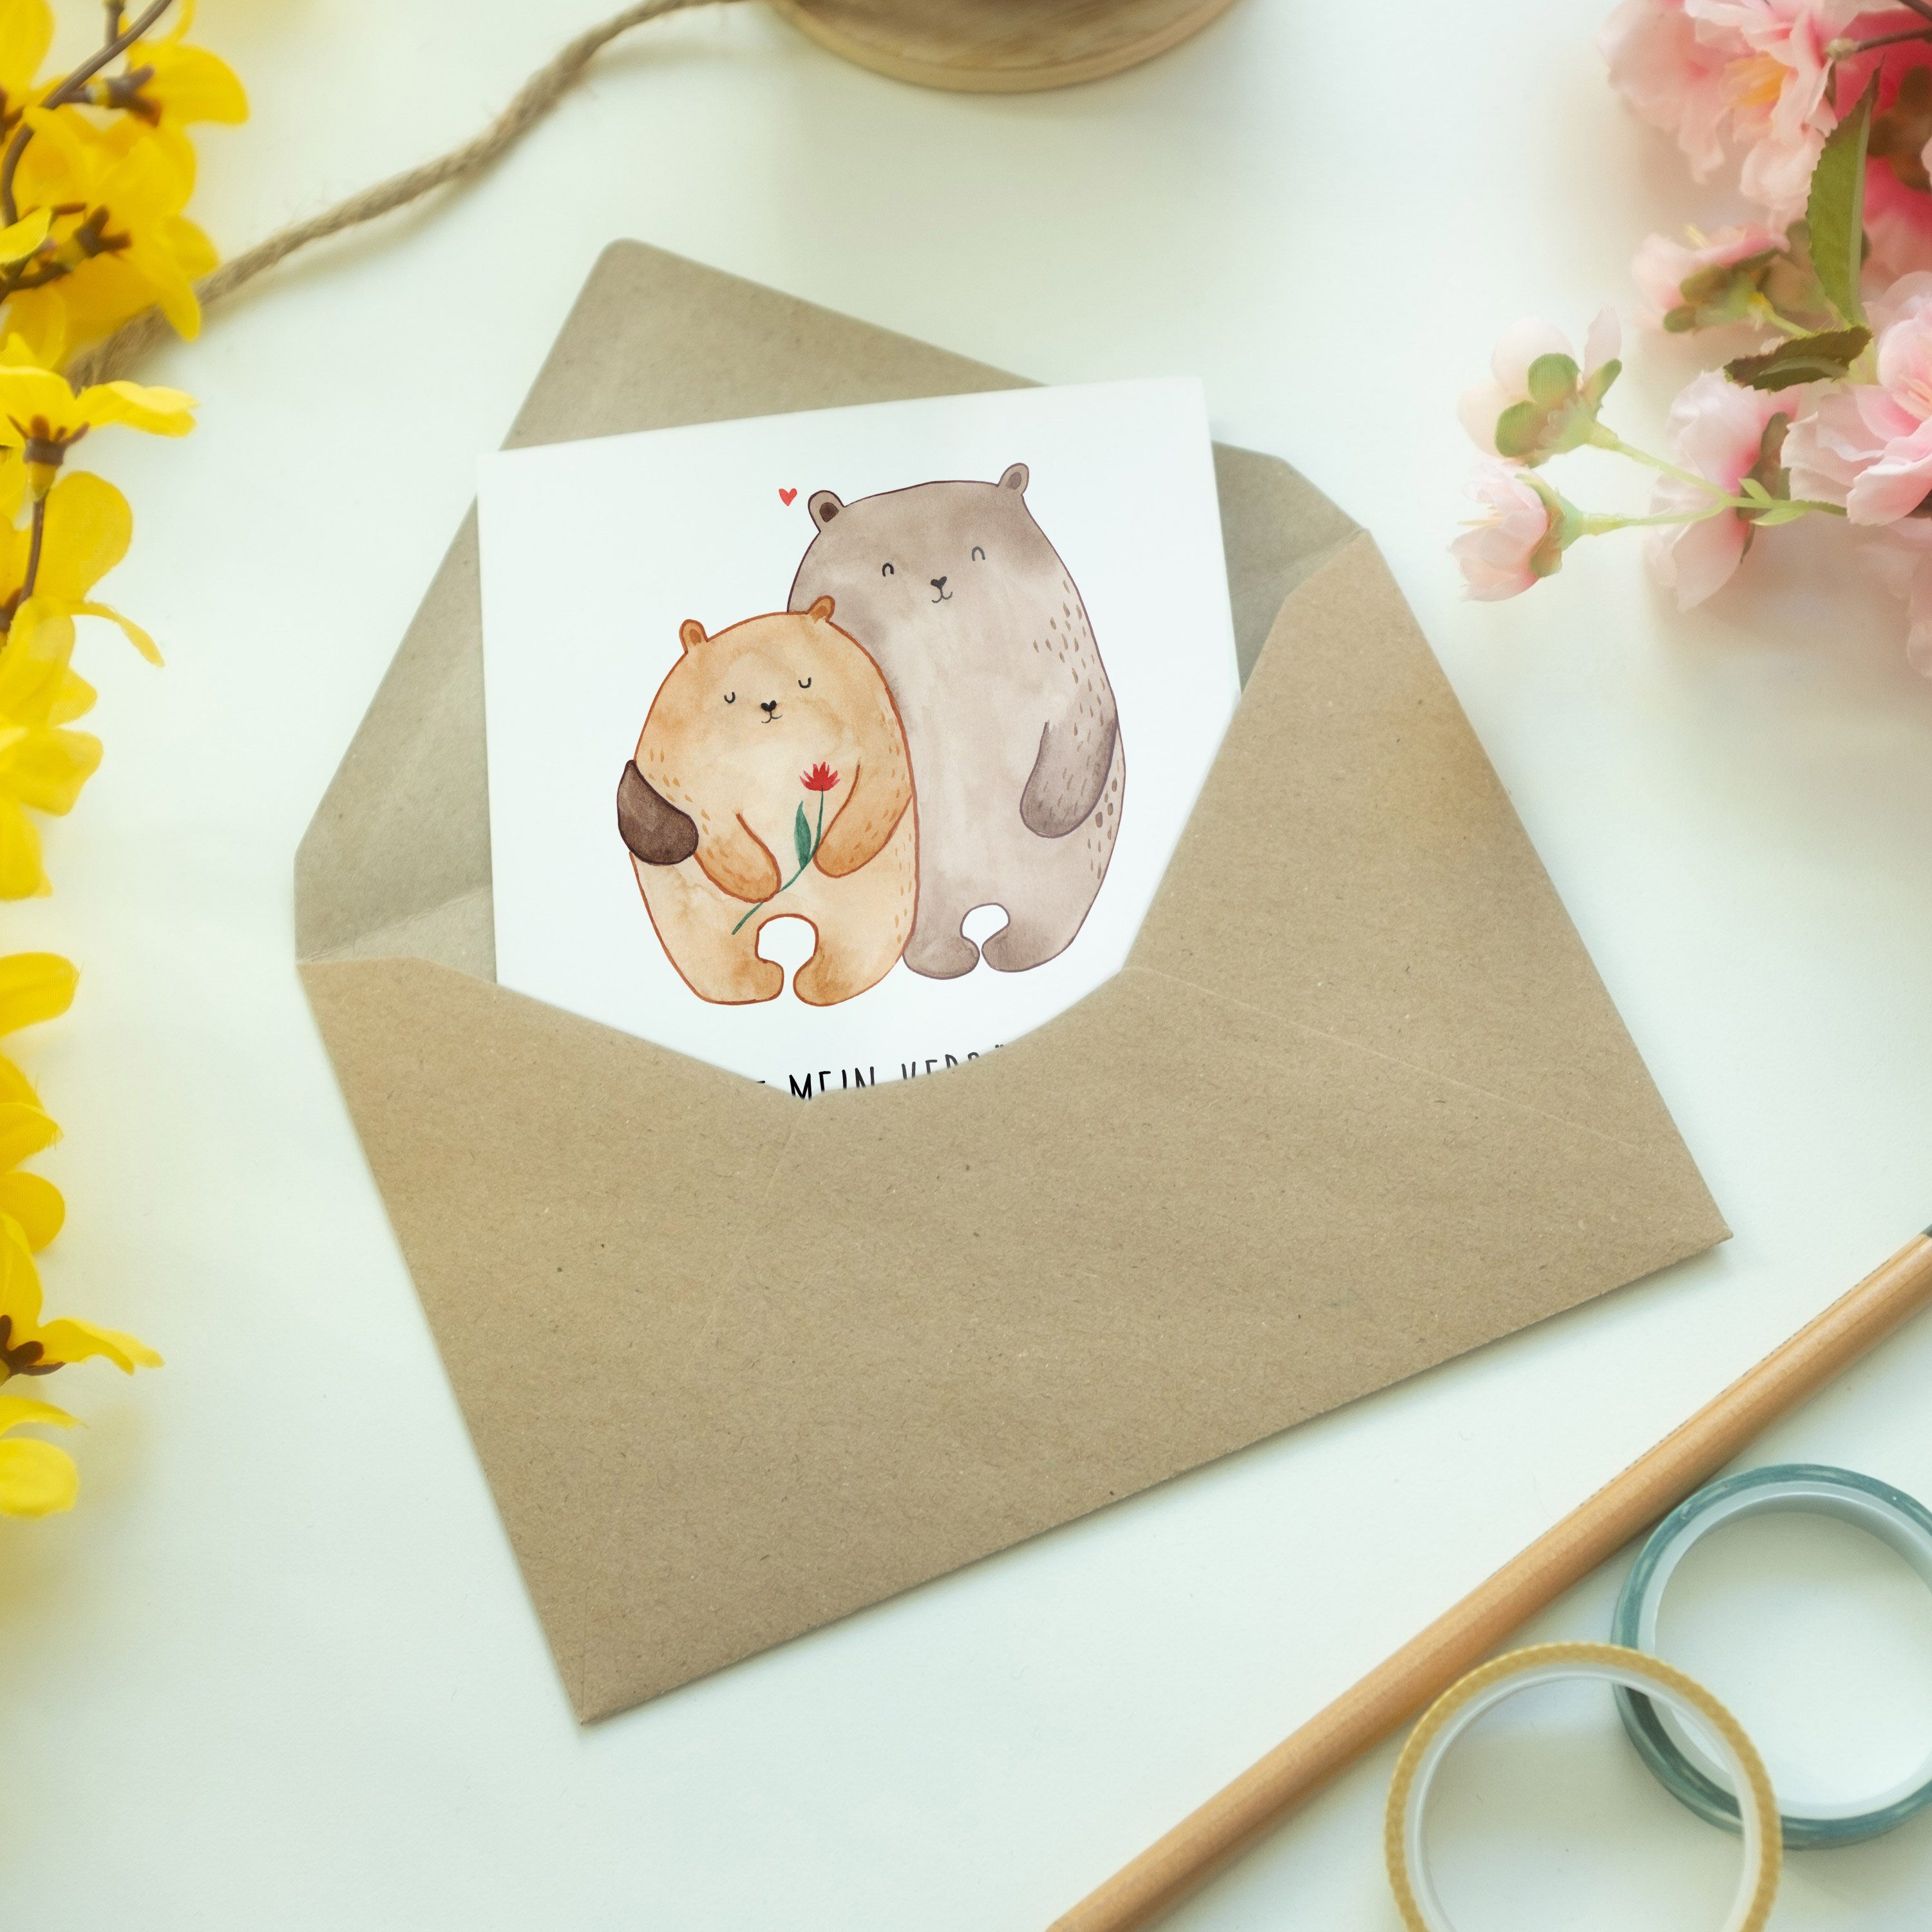 Weiß - Hochzeitskarte, Klap Mrs. & Bären Panda Geschenk, Liebe Mr. Grußkarte Verlobt, - Umarmen,